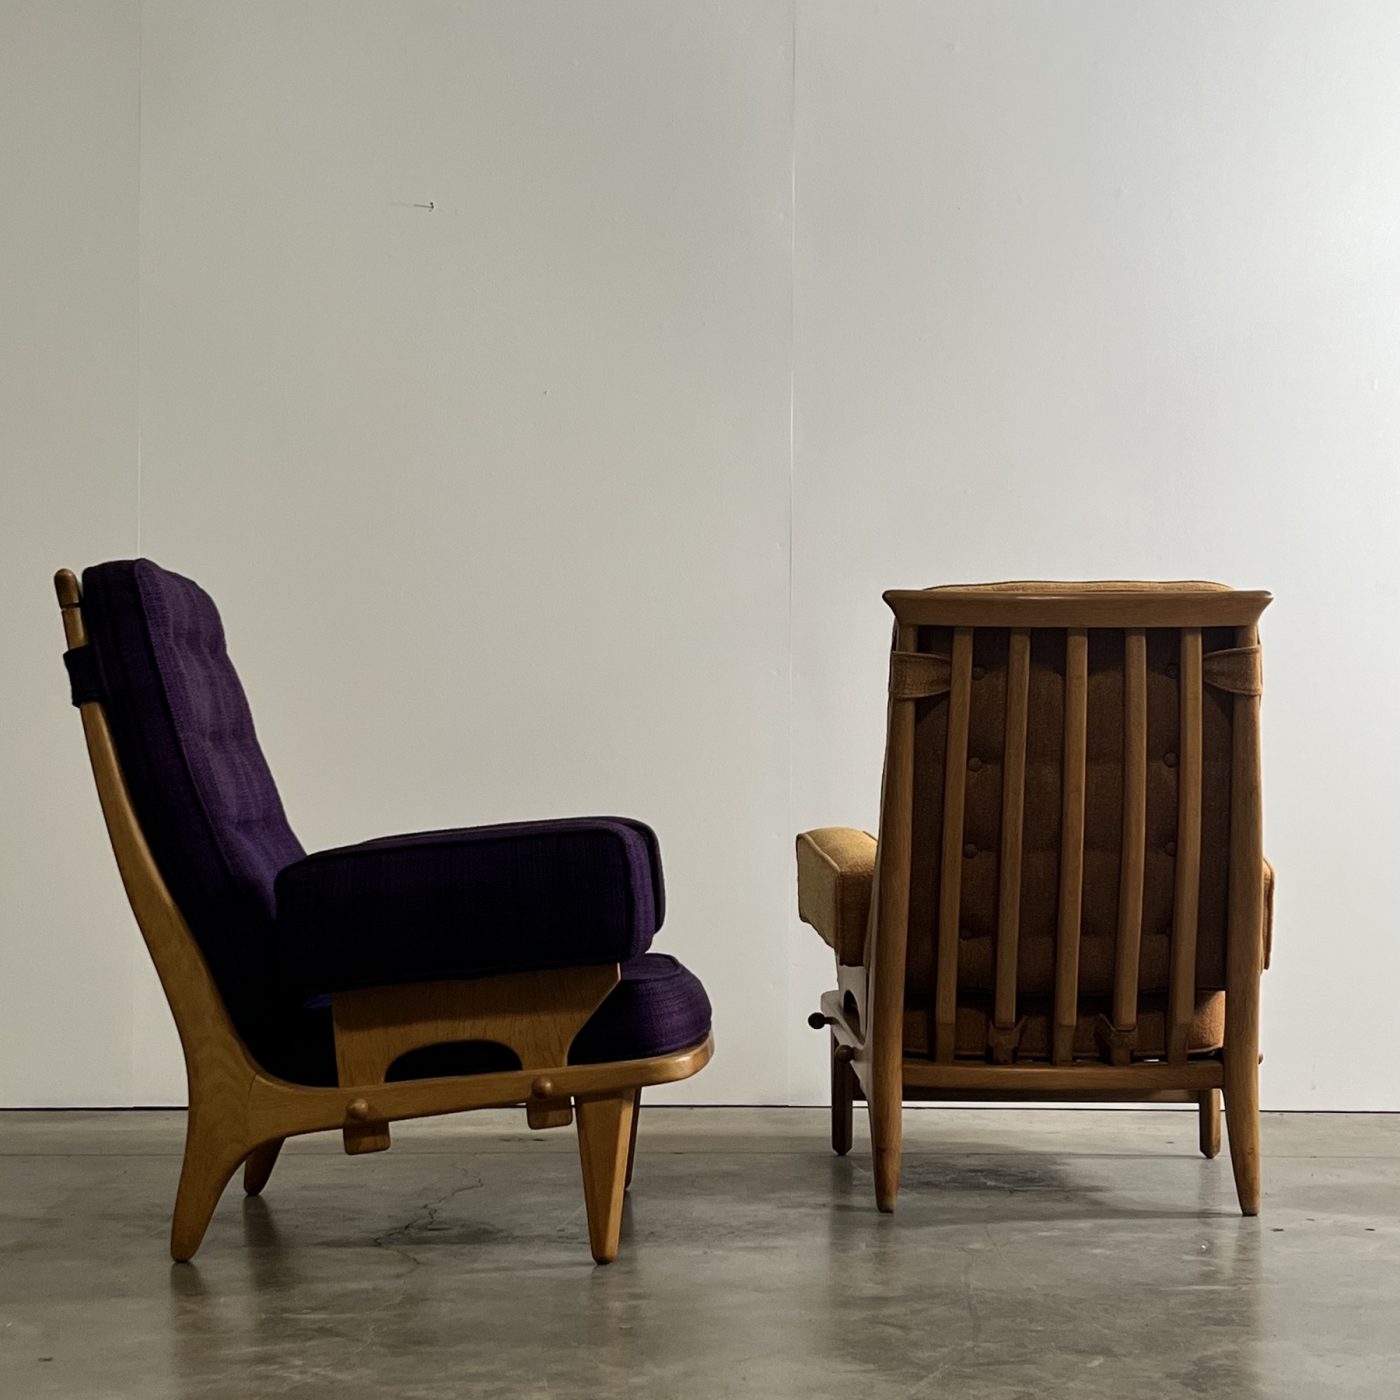 objet-vagabond-guillerme-armchairs0005